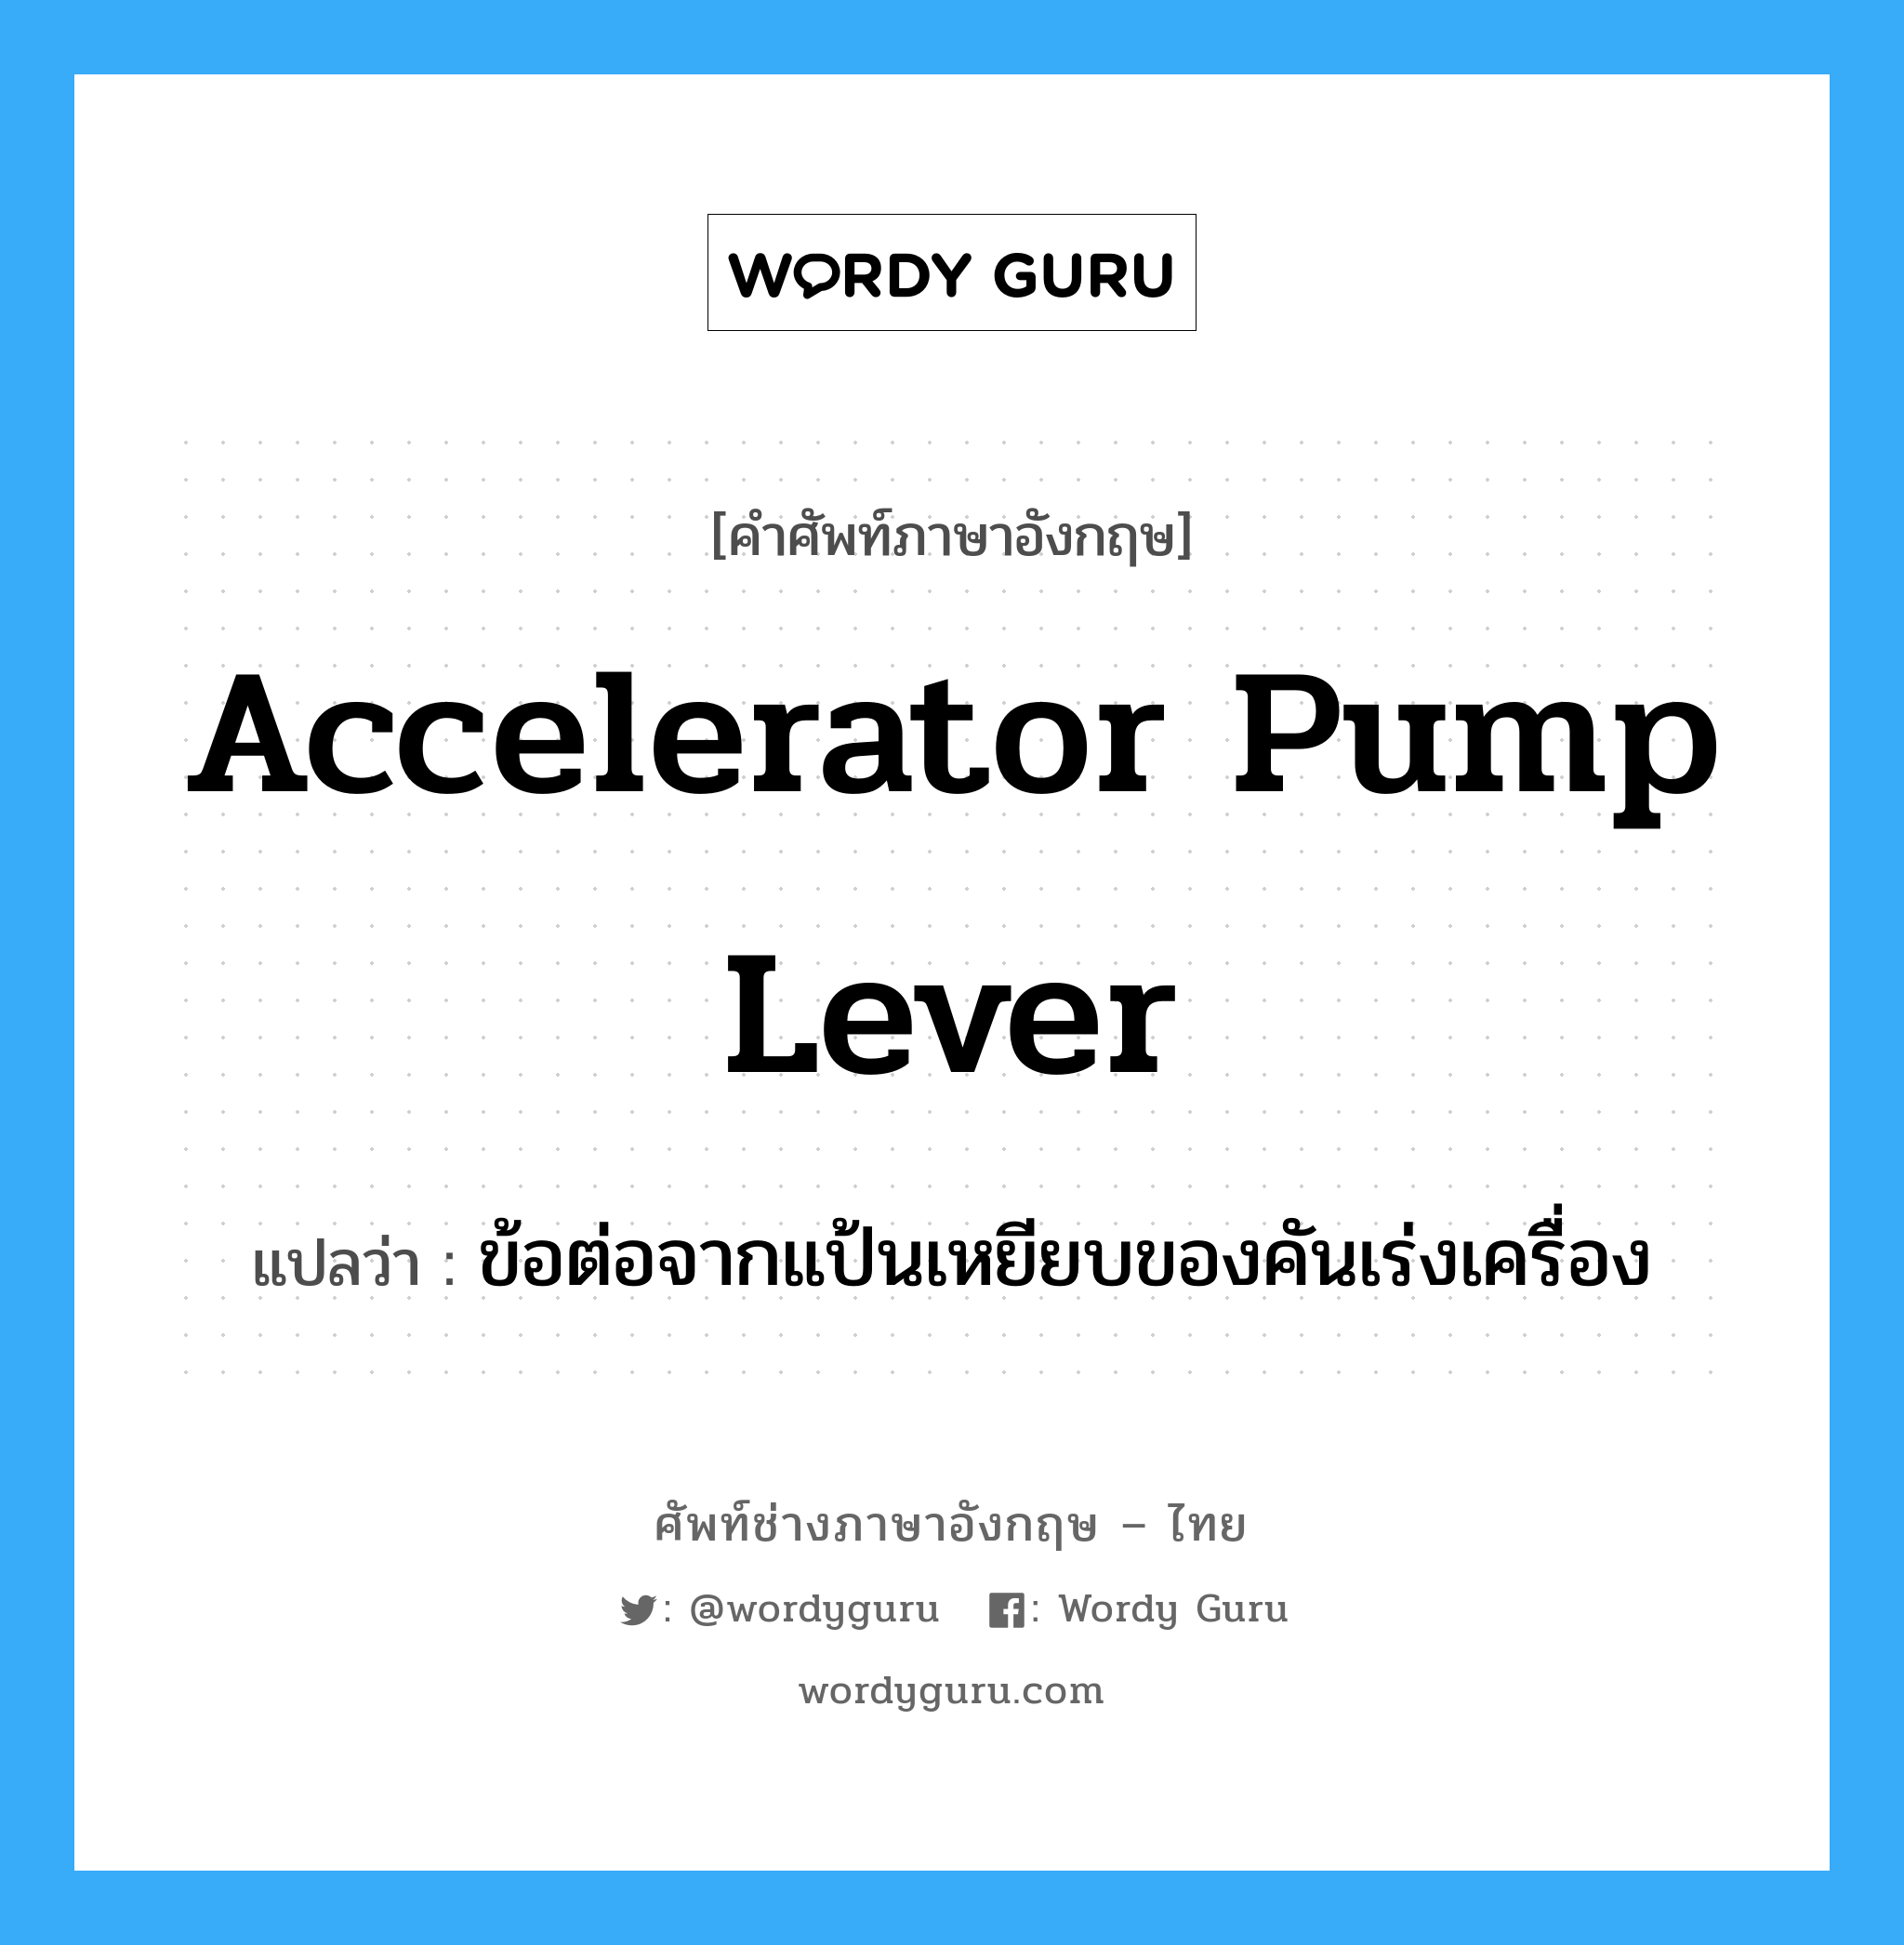 ข้อต่อจากแป้นเหยียบของคันเร่งเครื่อง ภาษาอังกฤษ?, คำศัพท์ช่างภาษาอังกฤษ - ไทย ข้อต่อจากแป้นเหยียบของคันเร่งเครื่อง คำศัพท์ภาษาอังกฤษ ข้อต่อจากแป้นเหยียบของคันเร่งเครื่อง แปลว่า accelerator pump lever